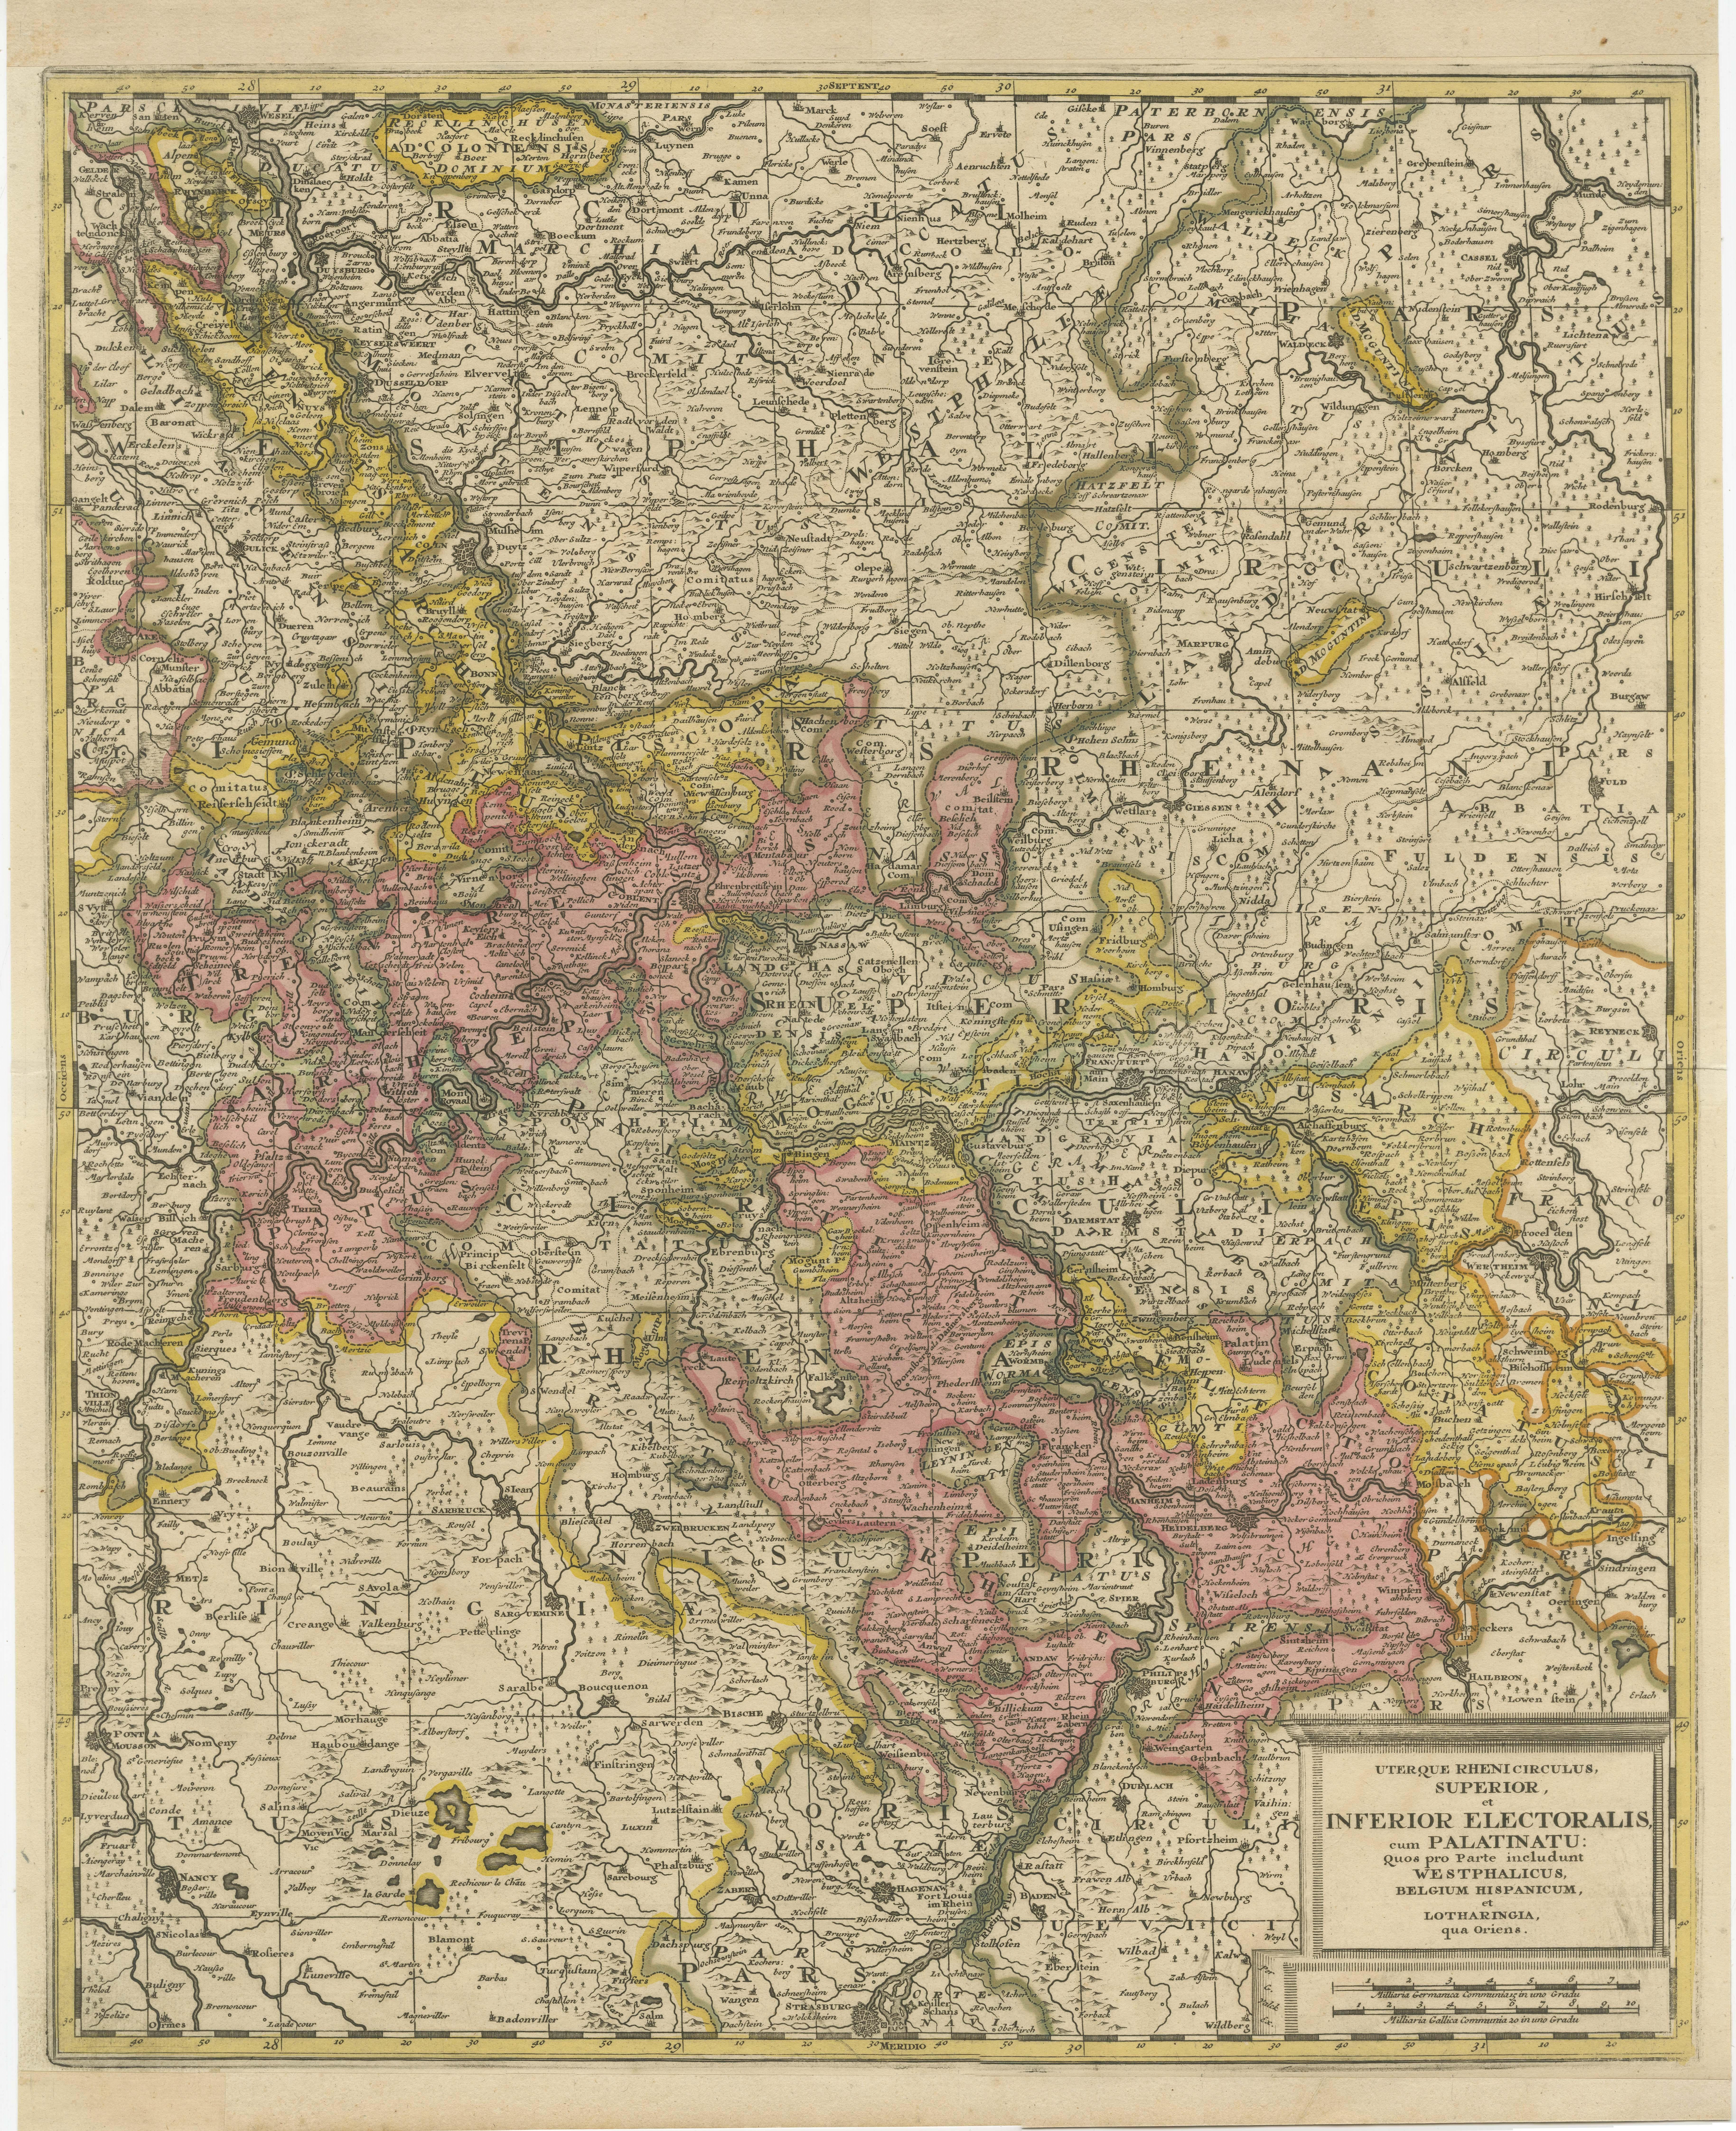 Antike Karte mit dem Titel 'Uterque Rheni Circulus Superior (..)'. Schöne alte farbige Karte des Gebiets am Rhein, von Straßburg bis Wesel und Duisburg, Deutschland. Die Karte umfasst auch einen großen Teil der Mosel (von Nancy bis Coblentz) und den